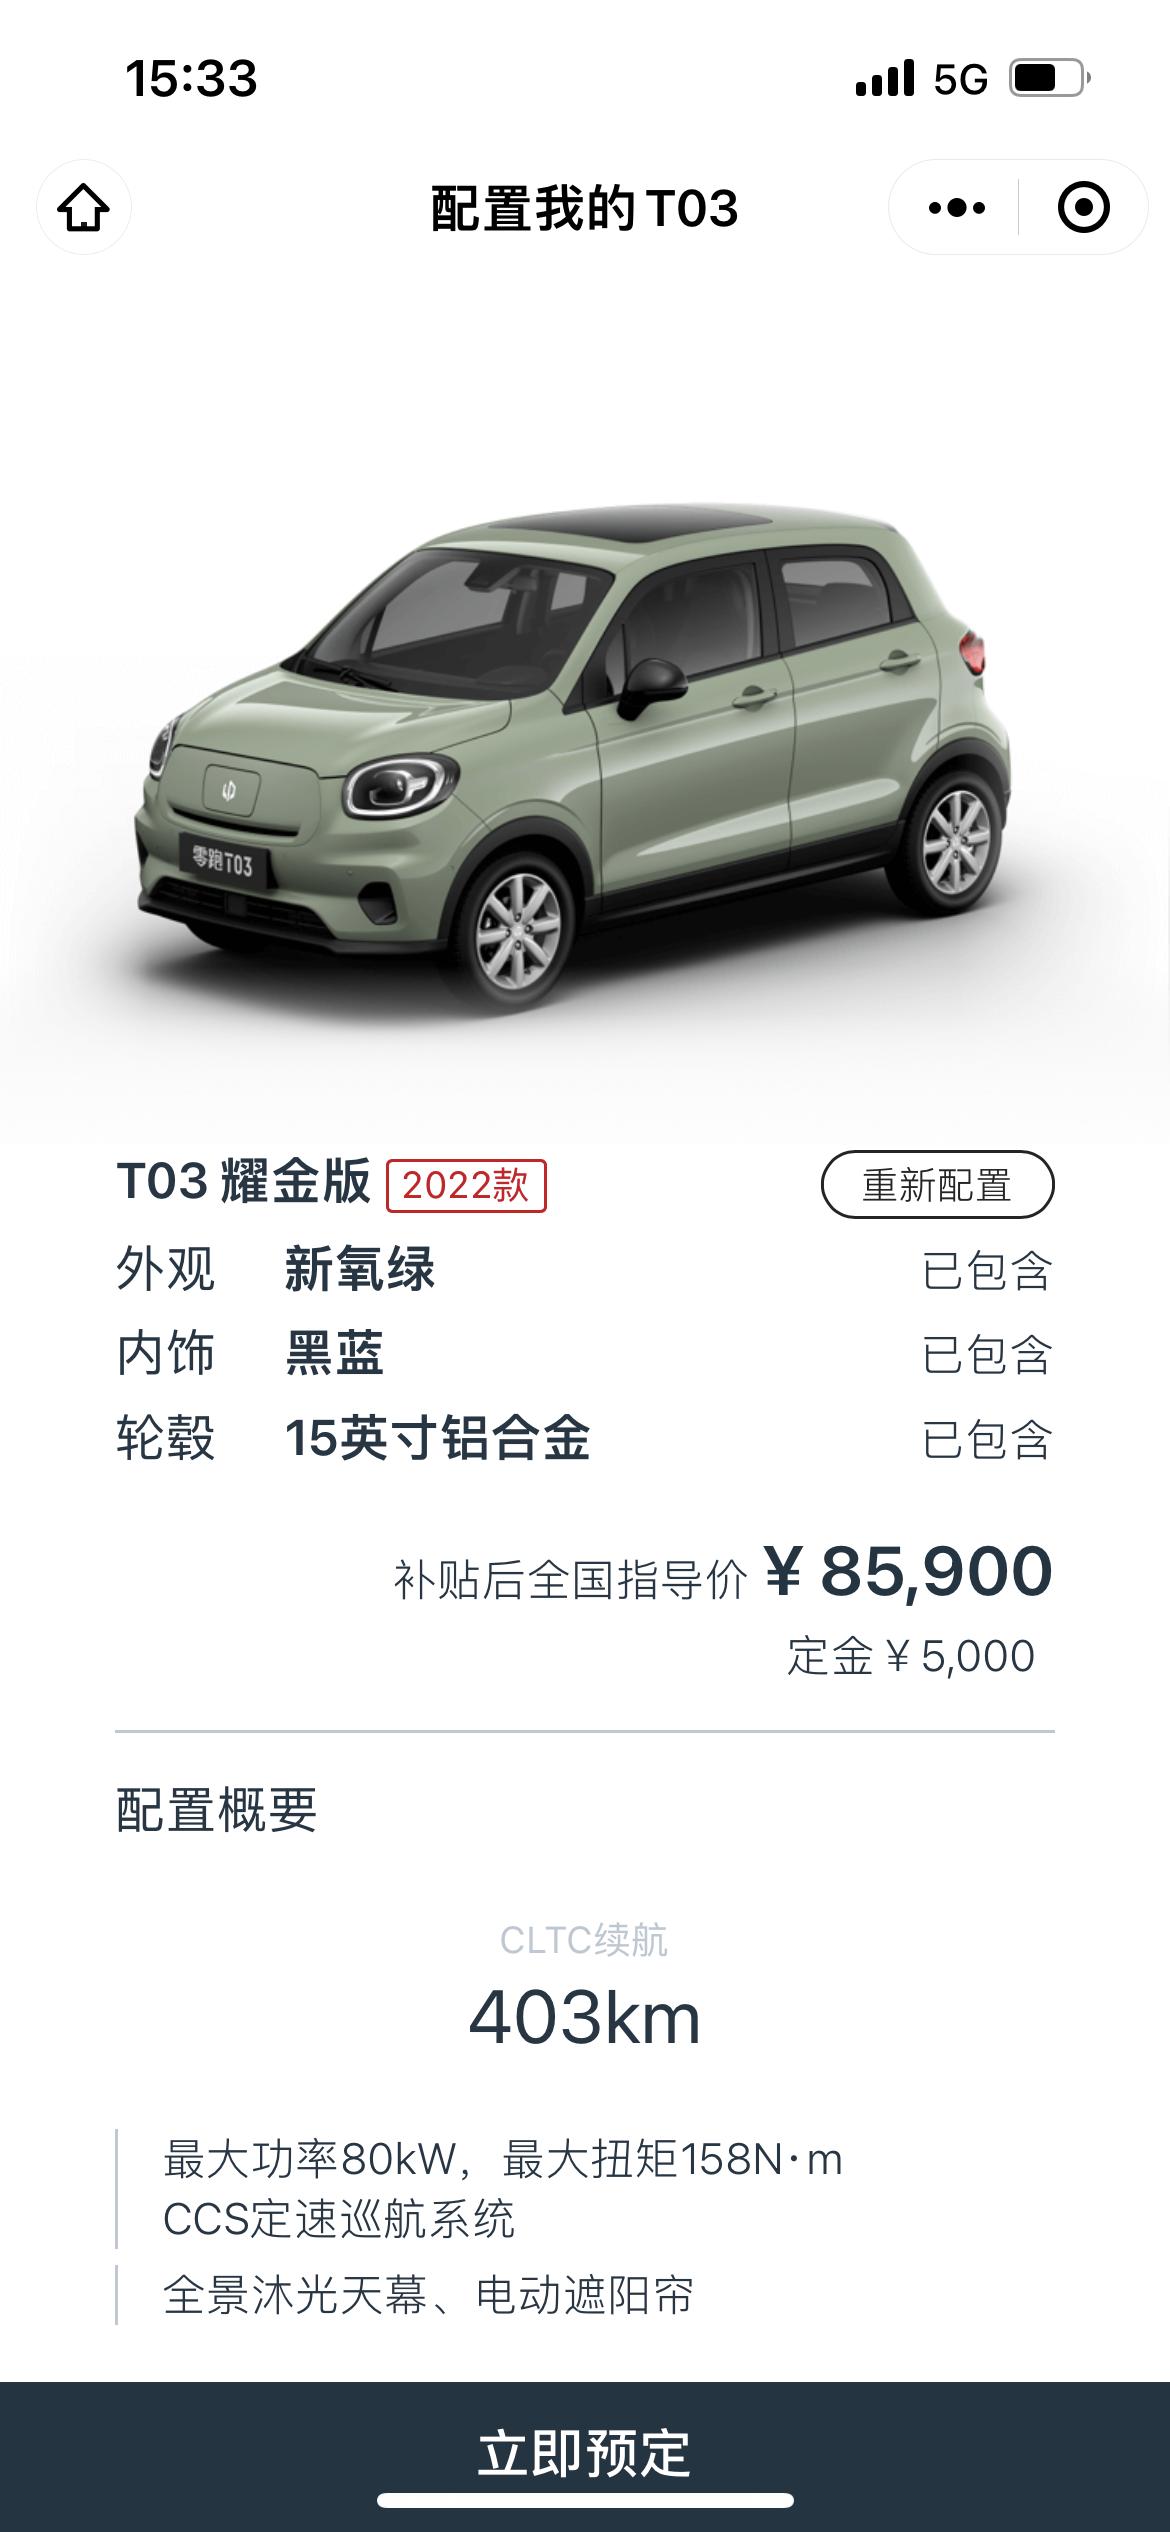 零跑零跑T03 现在想入T03耀金版，广州裸车价85900，没有任何优惠，加各种费用全款落地价大概91900左右，请问广